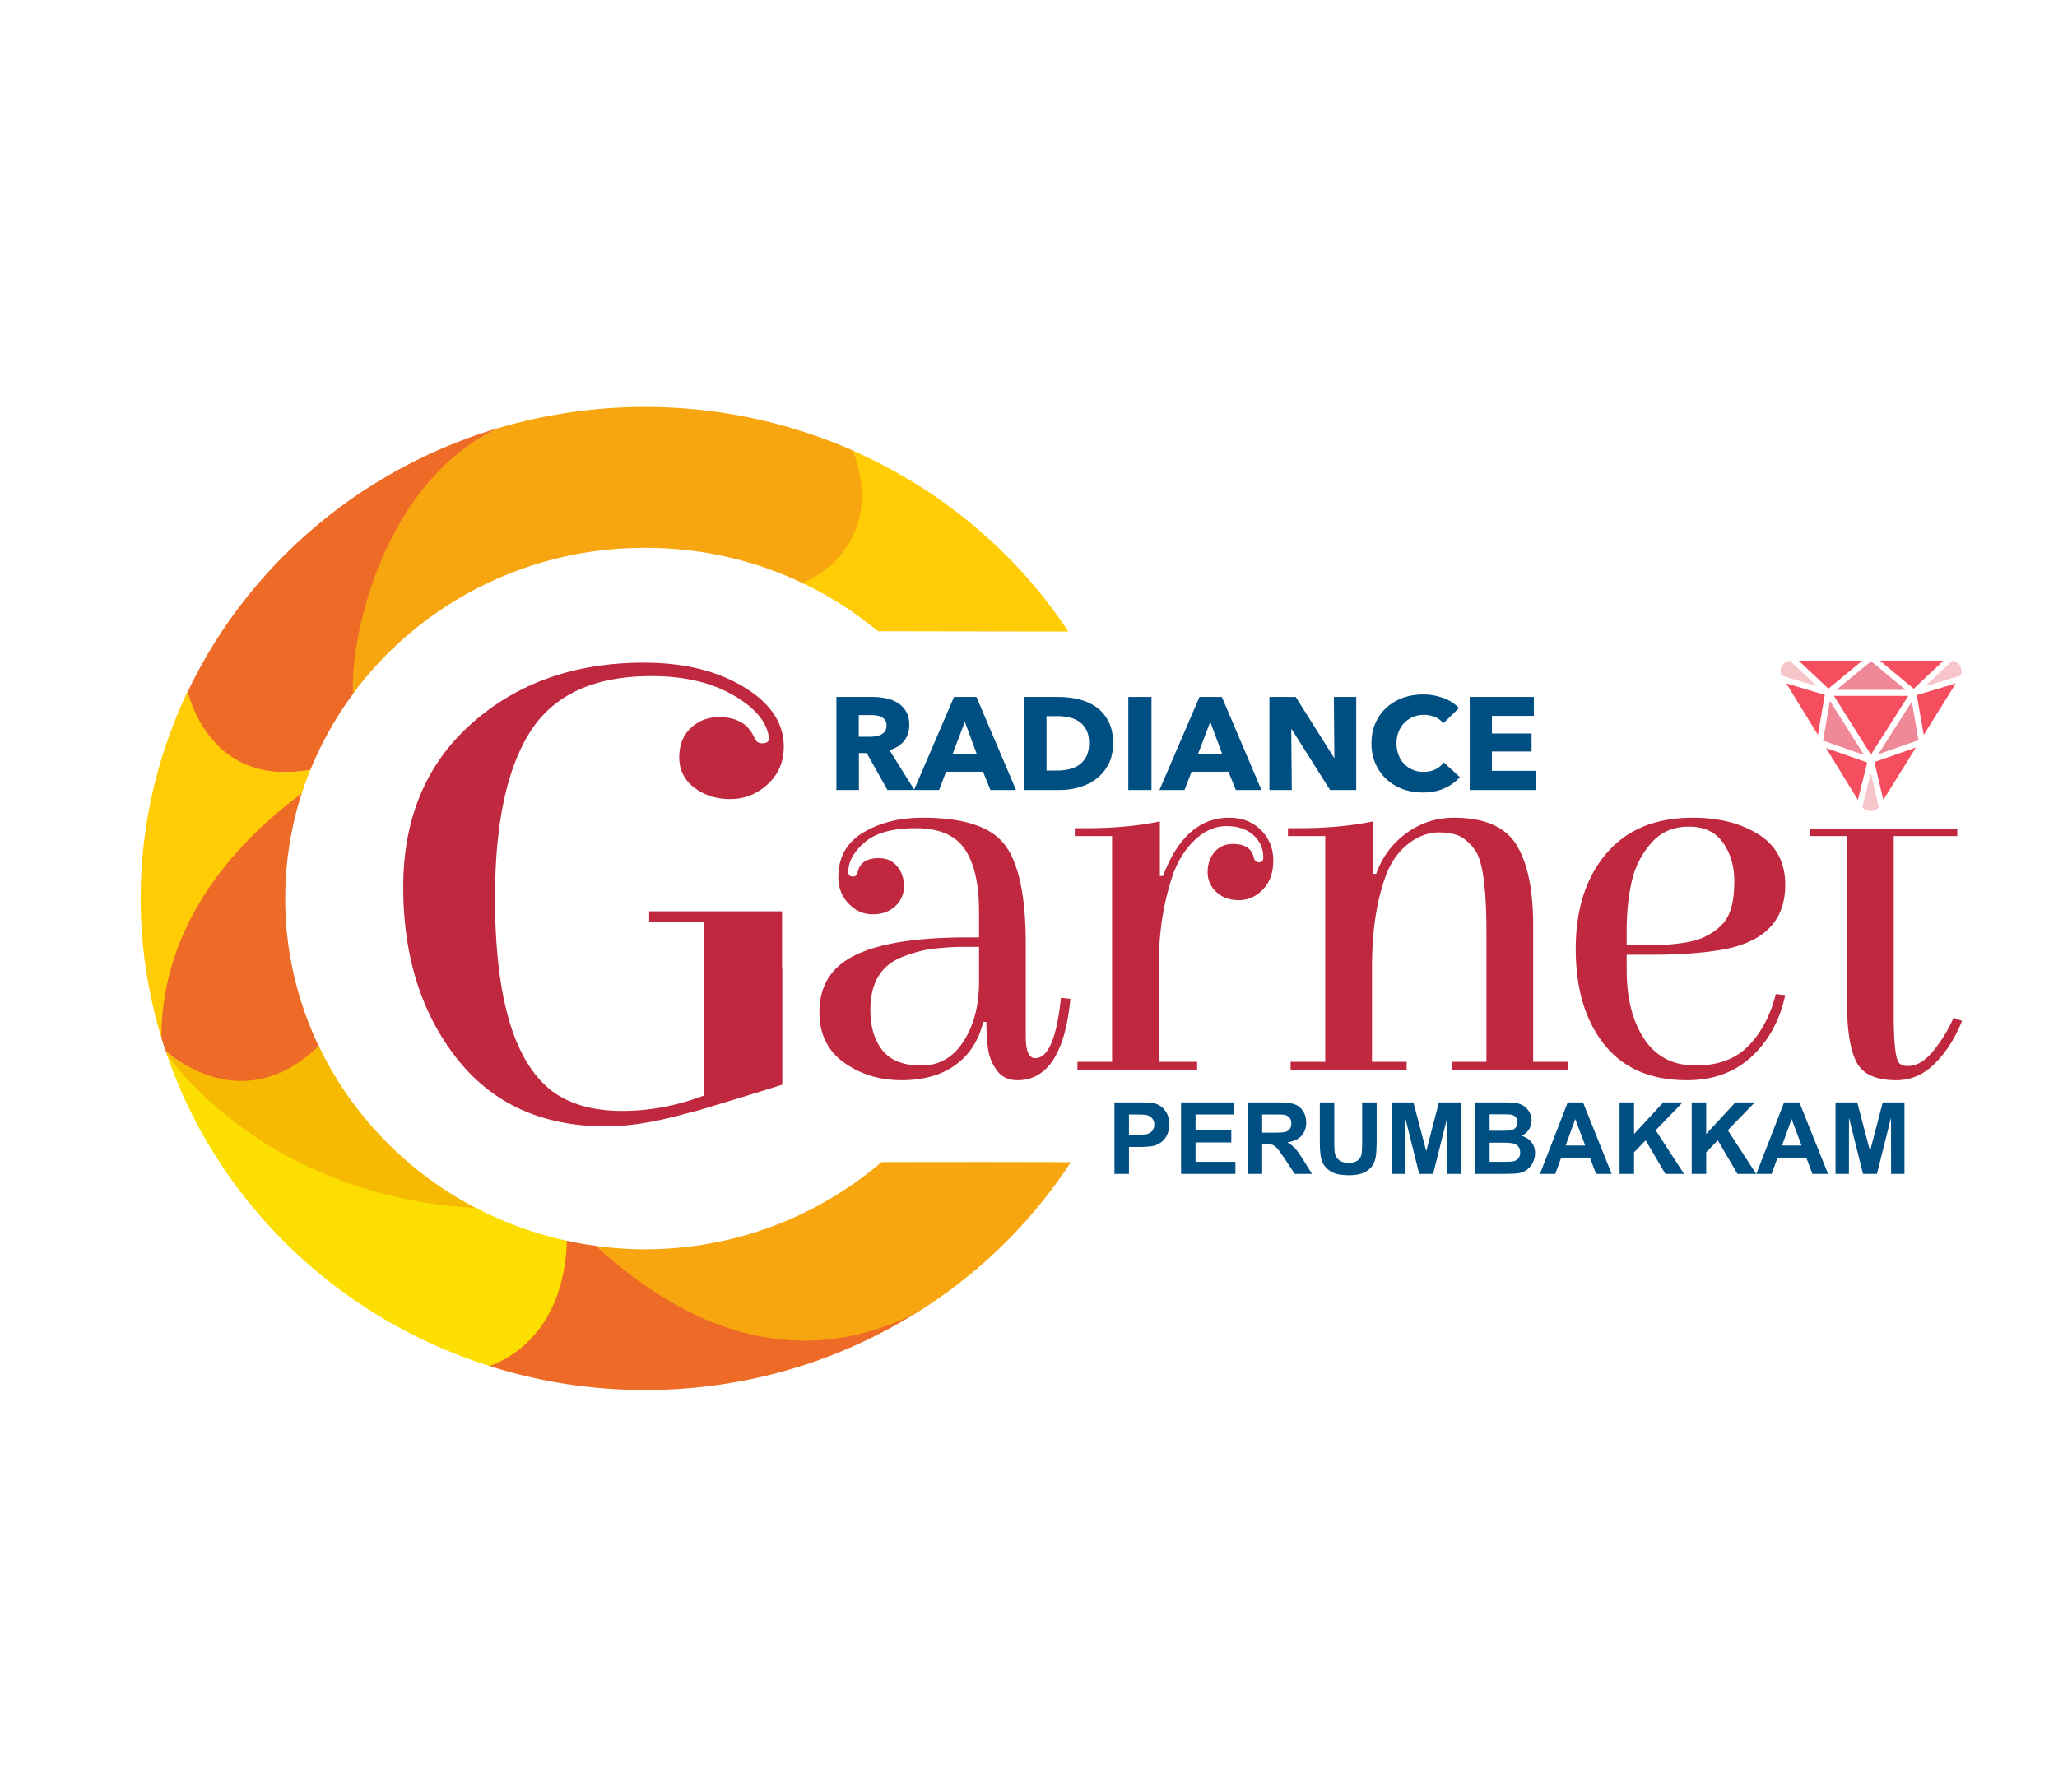 Radiance Garnet